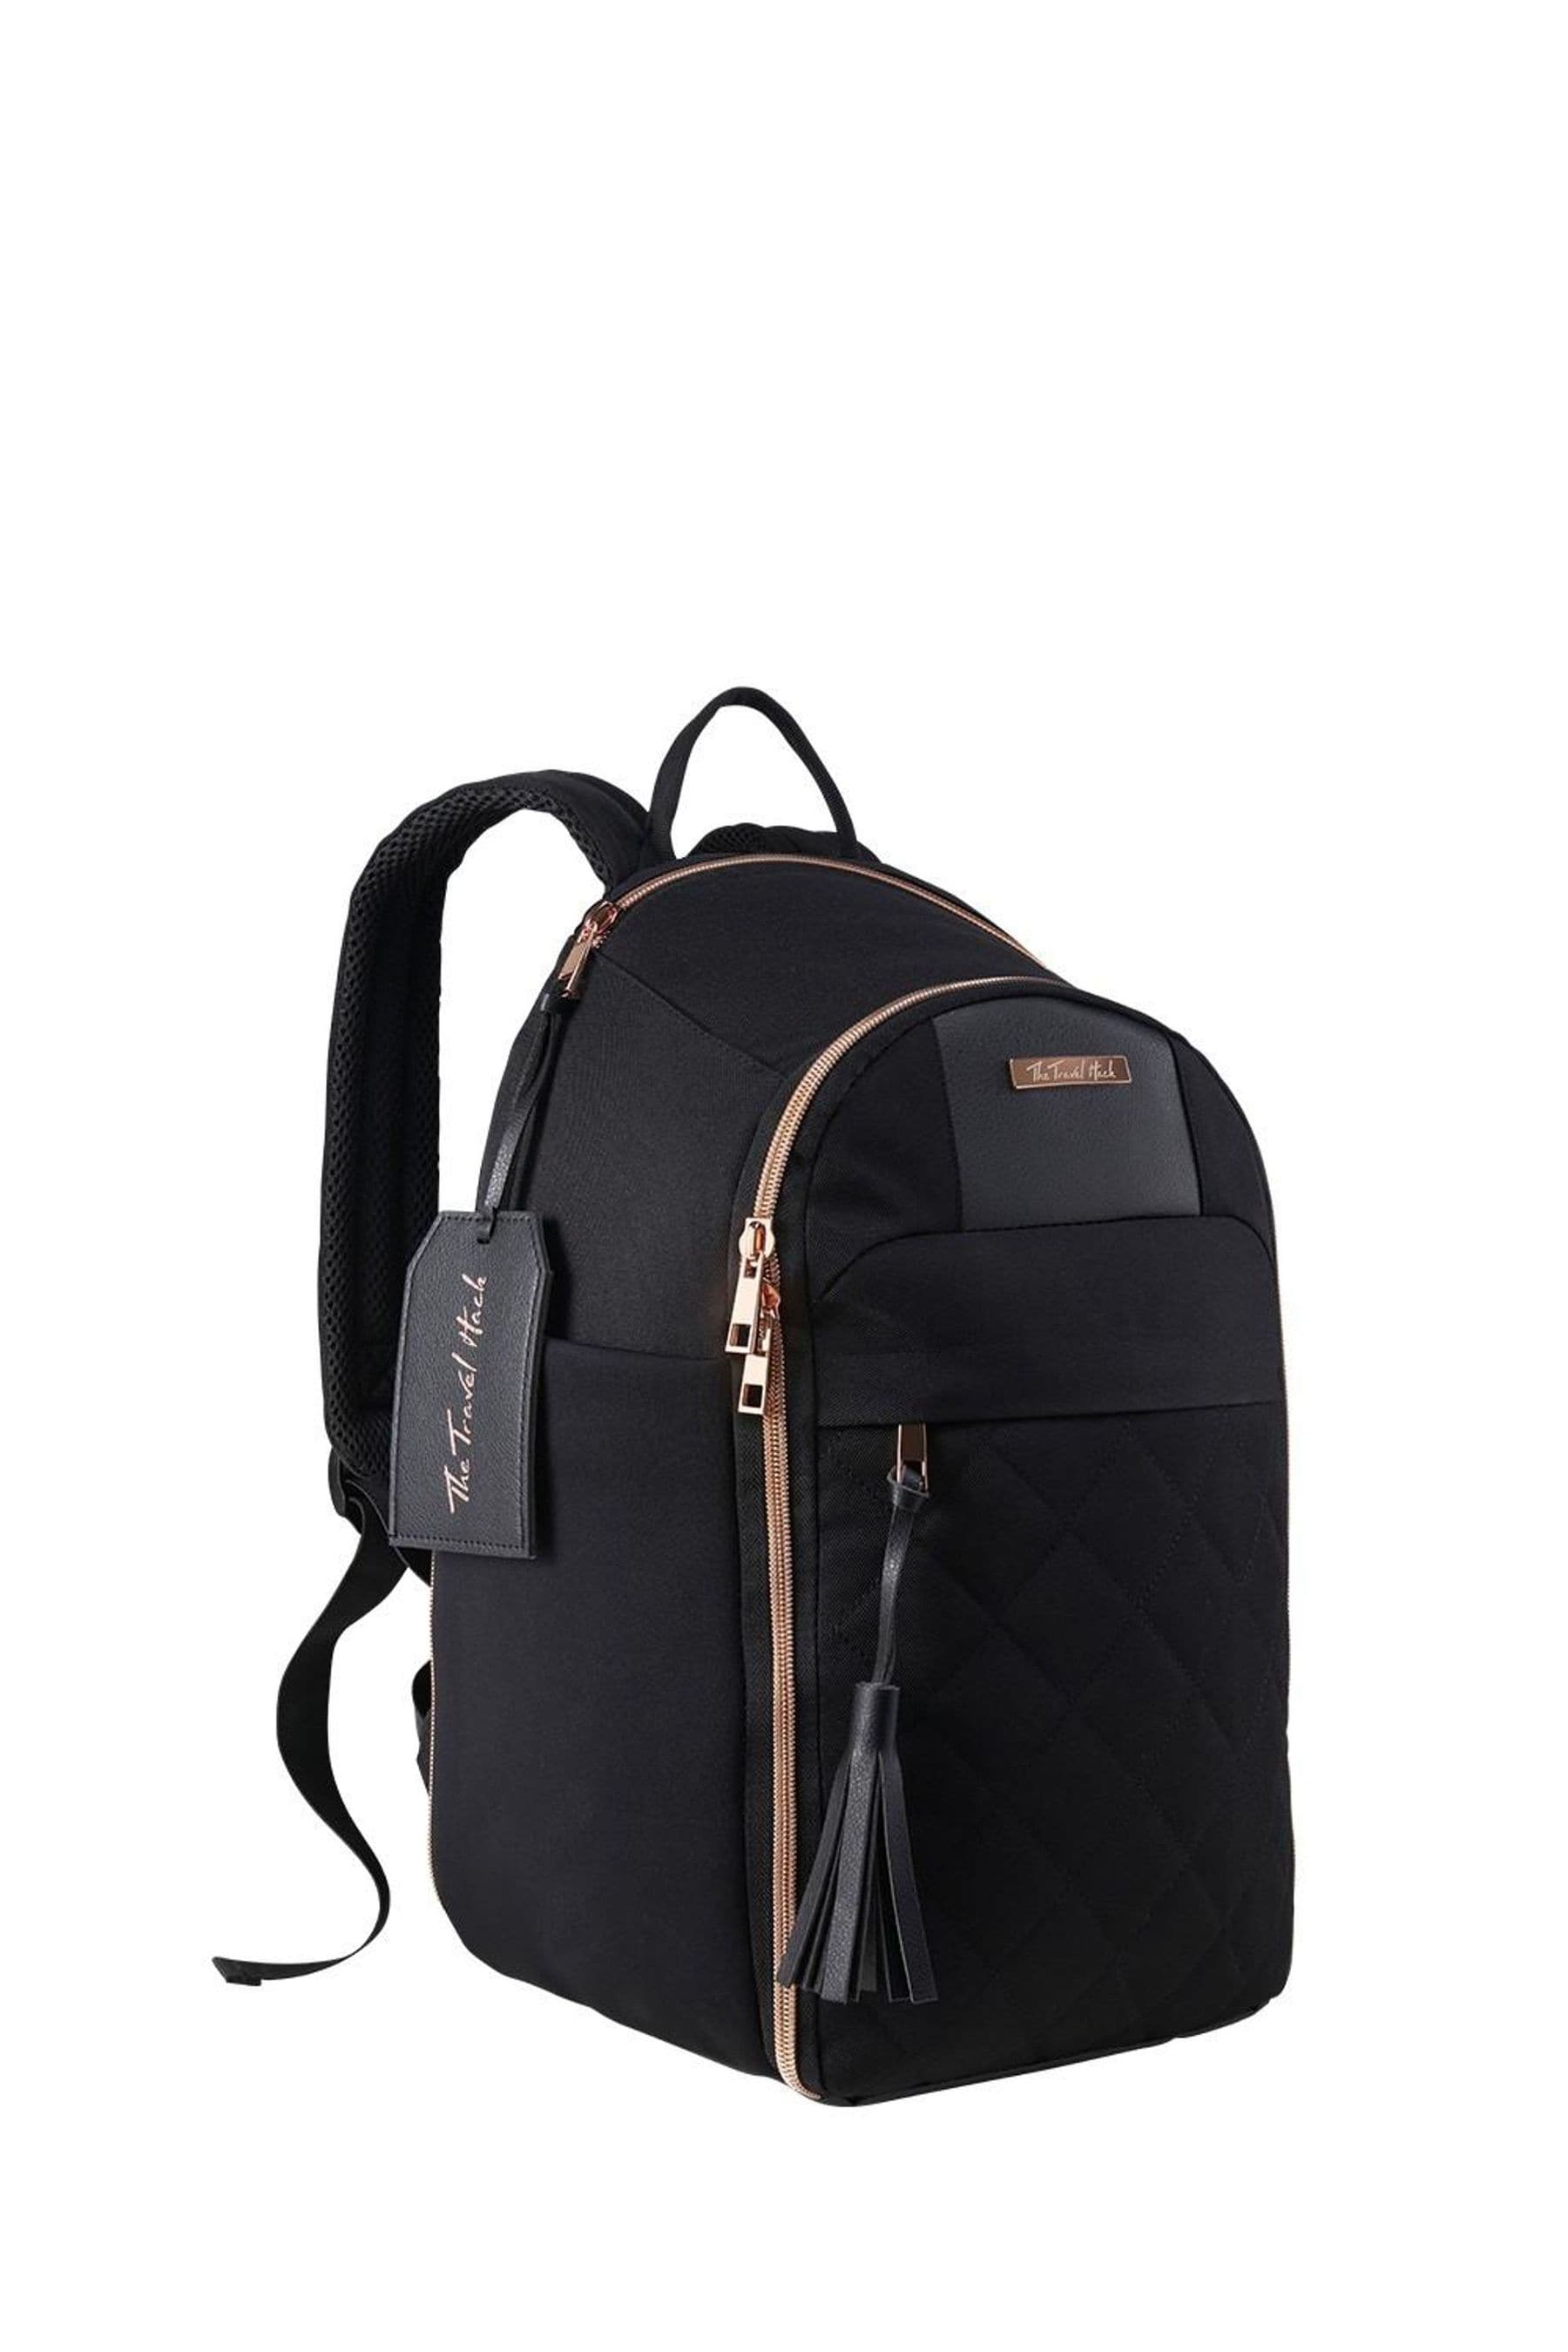 travel hack backpack next